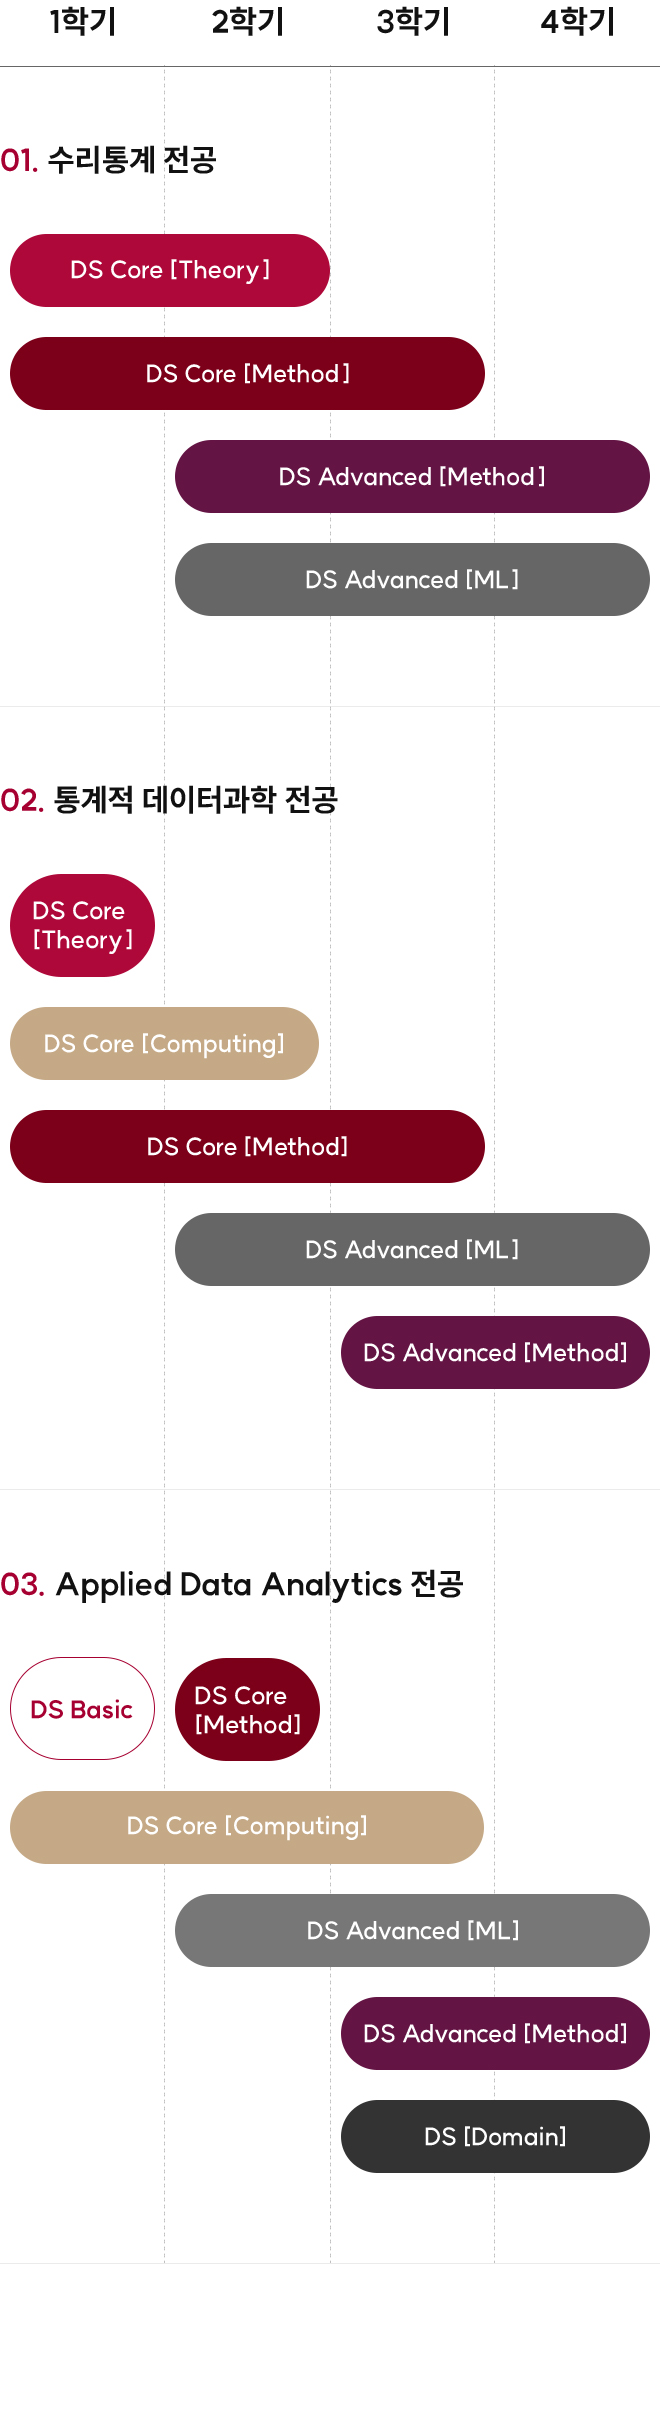 데이터사이언스플러스 DS+ 전공별 커리큘럼